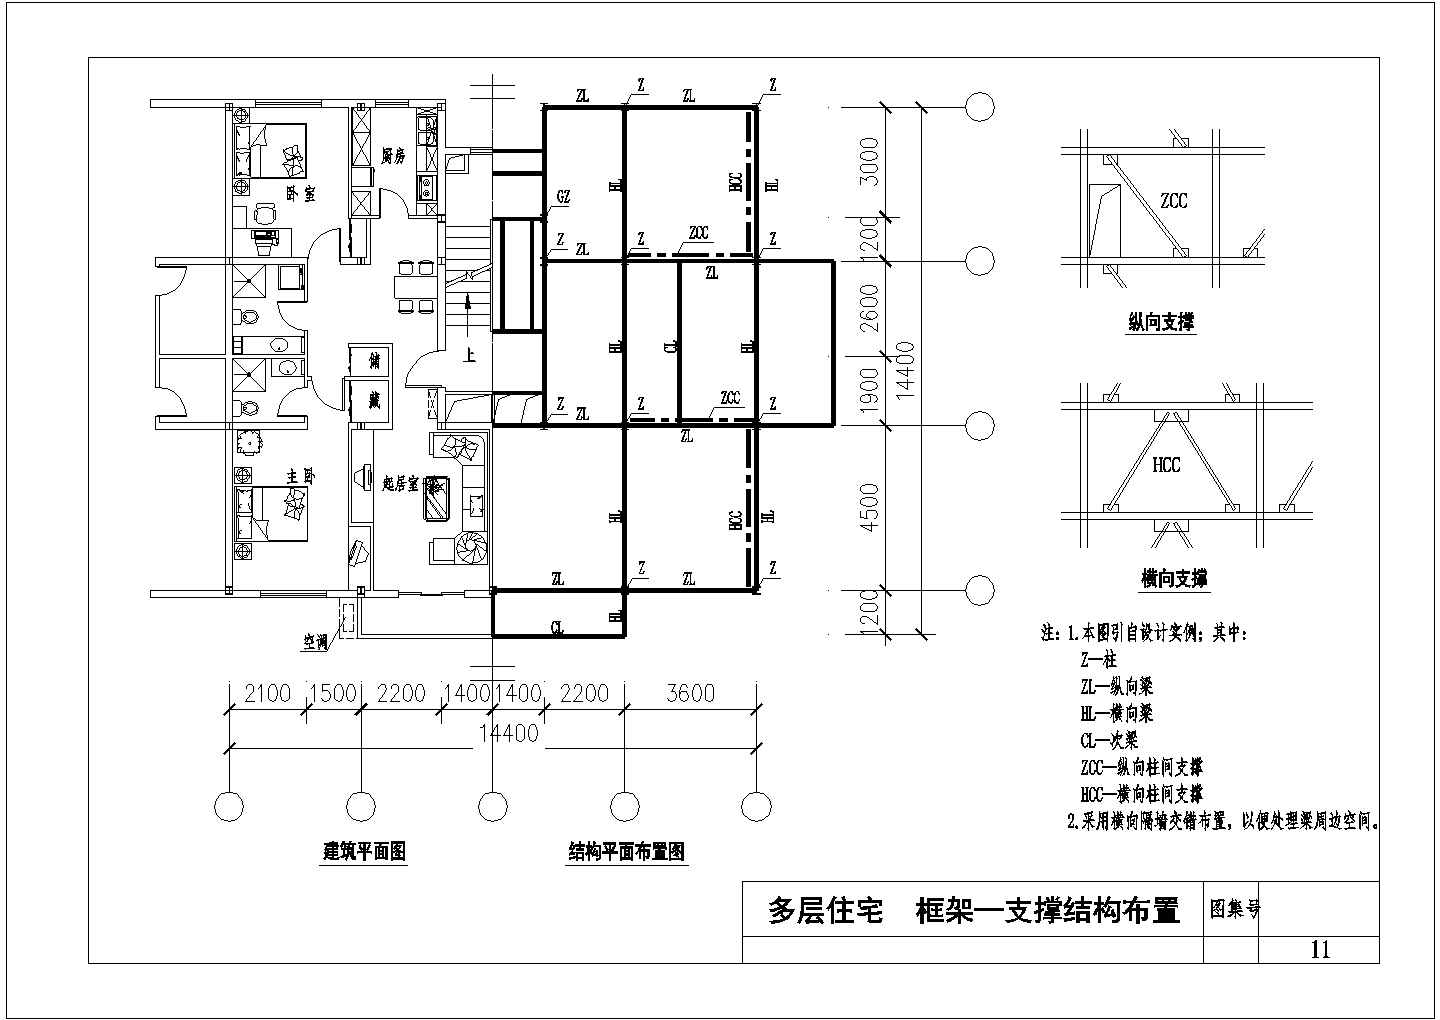 多层住宅钢结构框架—支撑结构布置节点详图CAD施工图设计